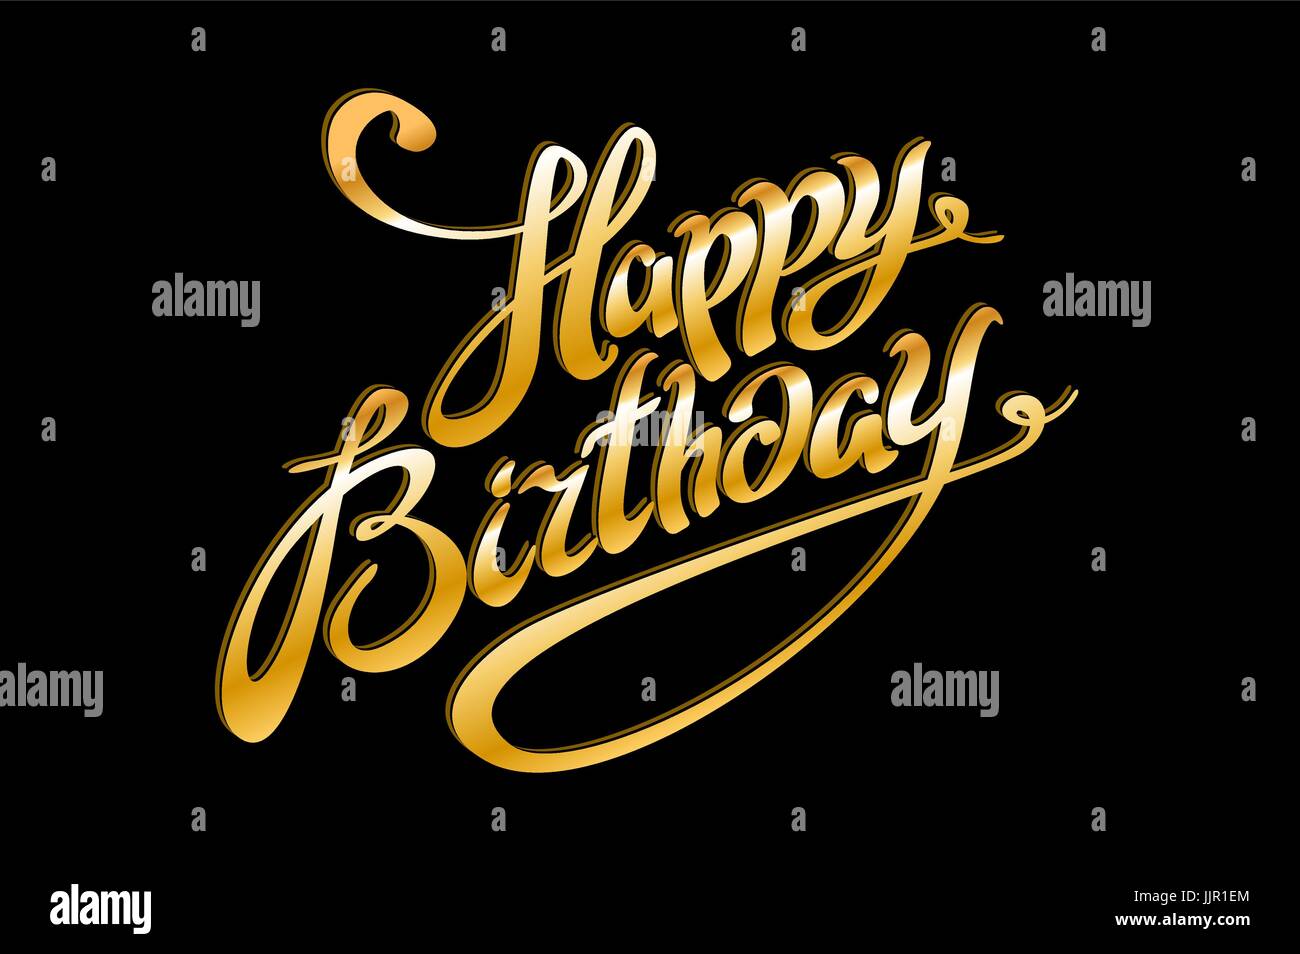 Lời chúc sinh nhật vàng trên nền đen là một kiểu thiết kế rất được yêu thích. Hãy xem ngay bộ sưu tập đầy sáng tạo này để tìm ra lời chúc sinh nhật đặc biệt cho ngày đặc biệt của bạn bè.